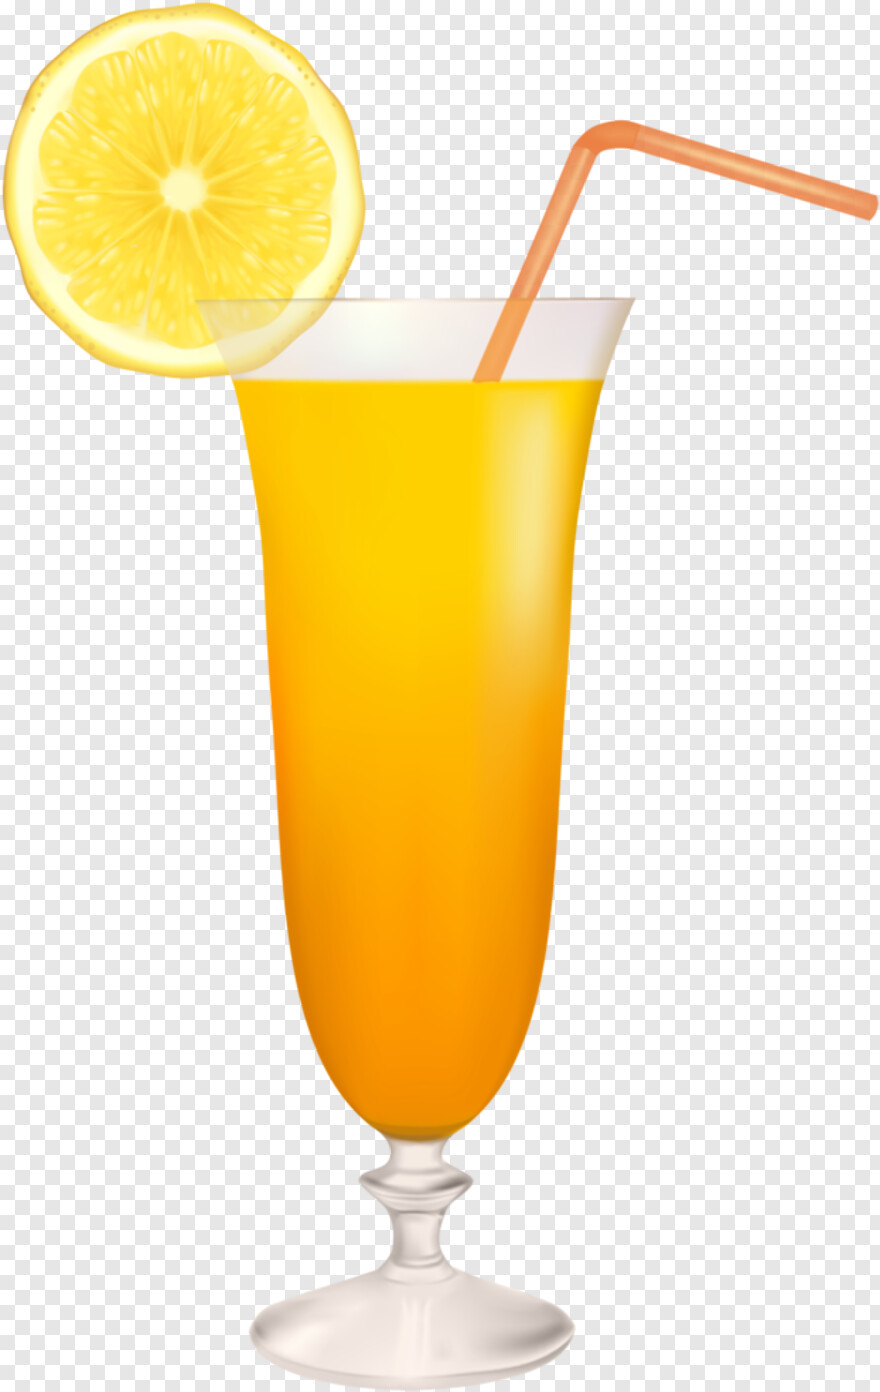 juice-glass # 795495